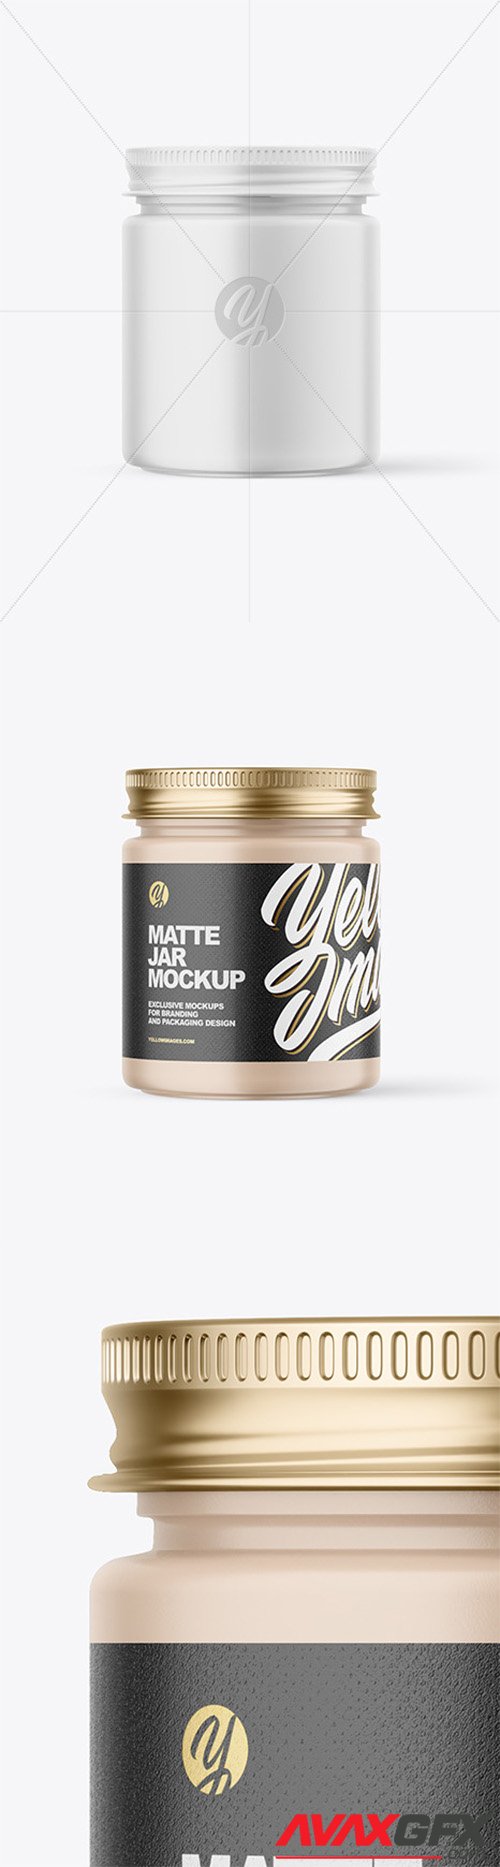 Matte Cosmetic Jar with Metallic Cap Mockup 80014